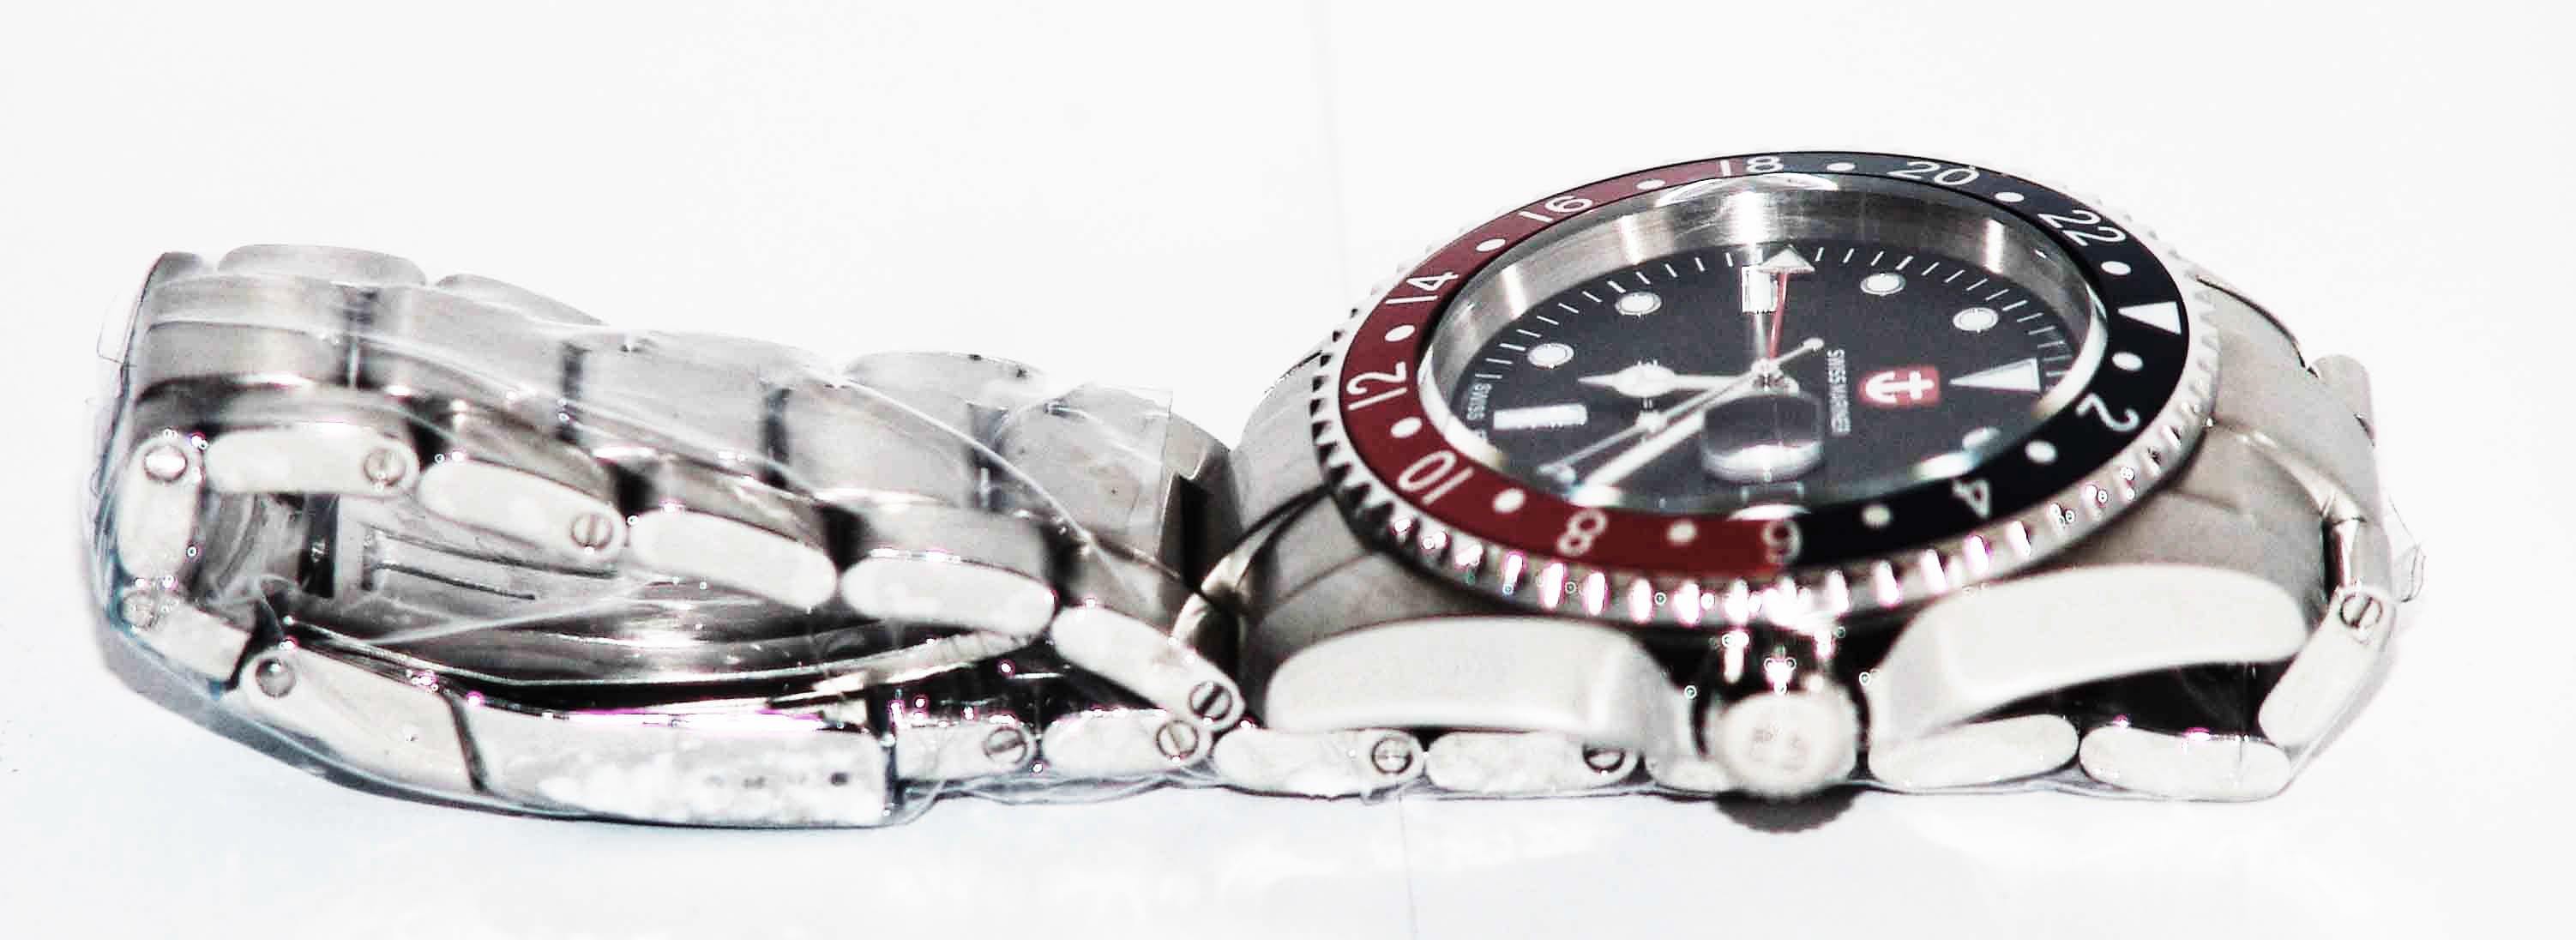 Swiss Mariner GMT Series Men's Watch SG8295R09A-SSRKBK - Prestige